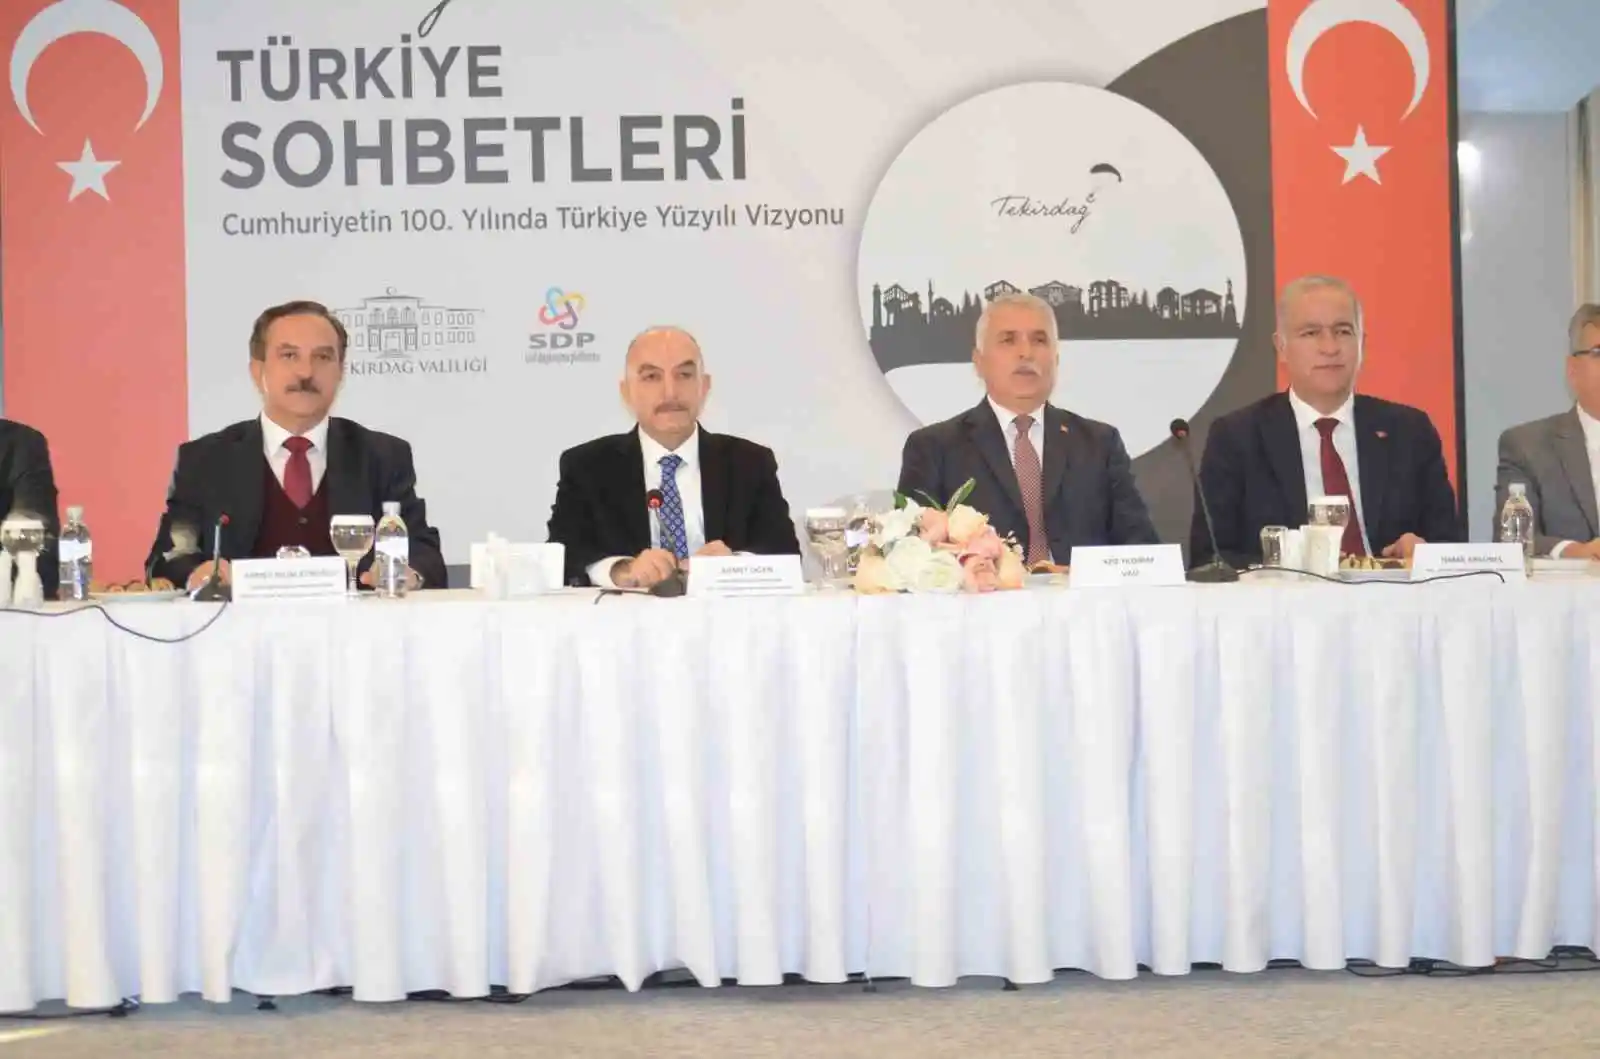 Cumhurbaşkanı Danışmanı Oğan: "Türkiye Cumhurbaşkanlığı Hükümet Sistemi'ne geçerek bir yönetim sistemi reformu yaptı"
, TEKİRDAĞ haberleri